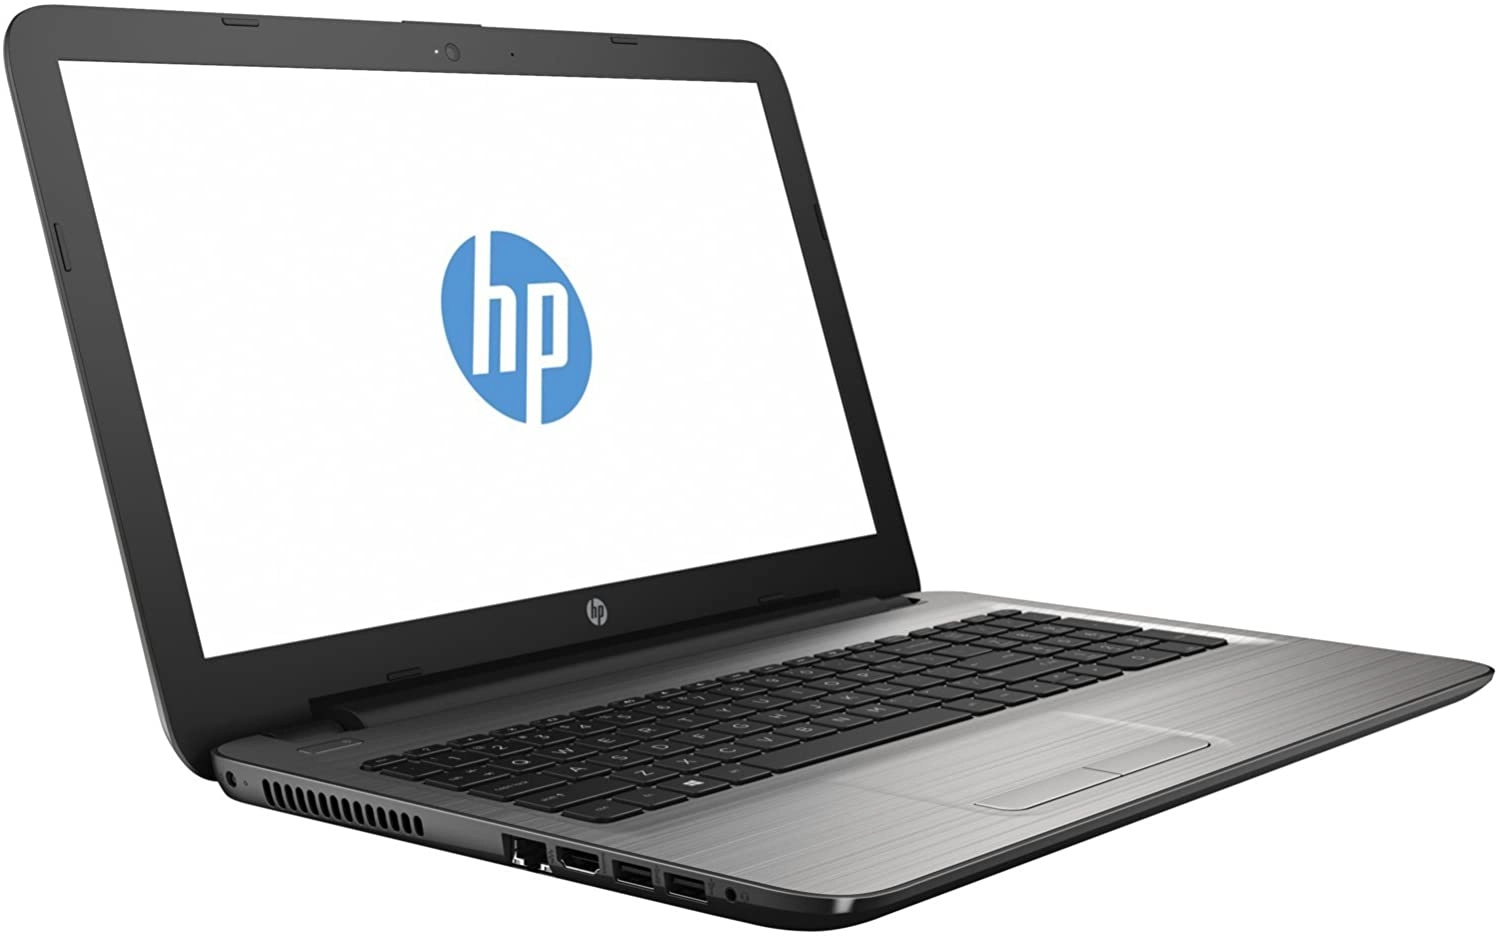 HP Notebook - 15-ay007ns laptop image